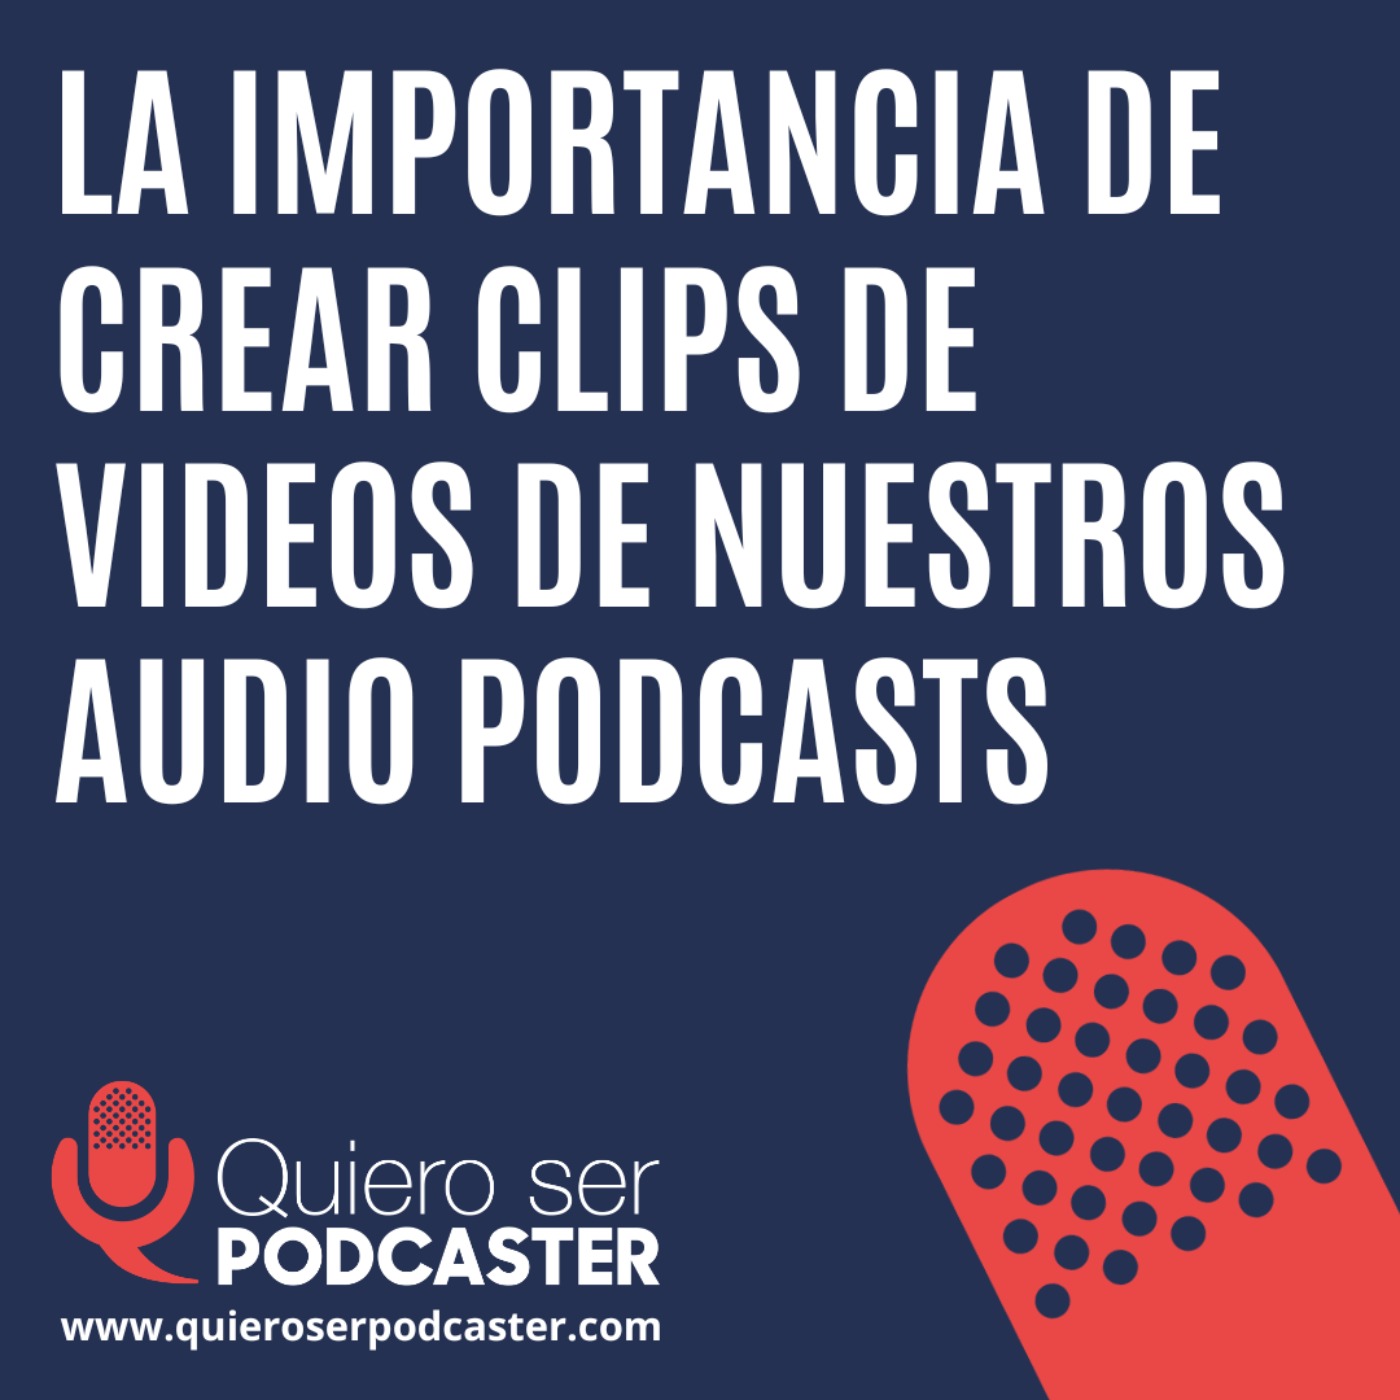 La importancia de crear clips de videos de nuestros audio podcasts